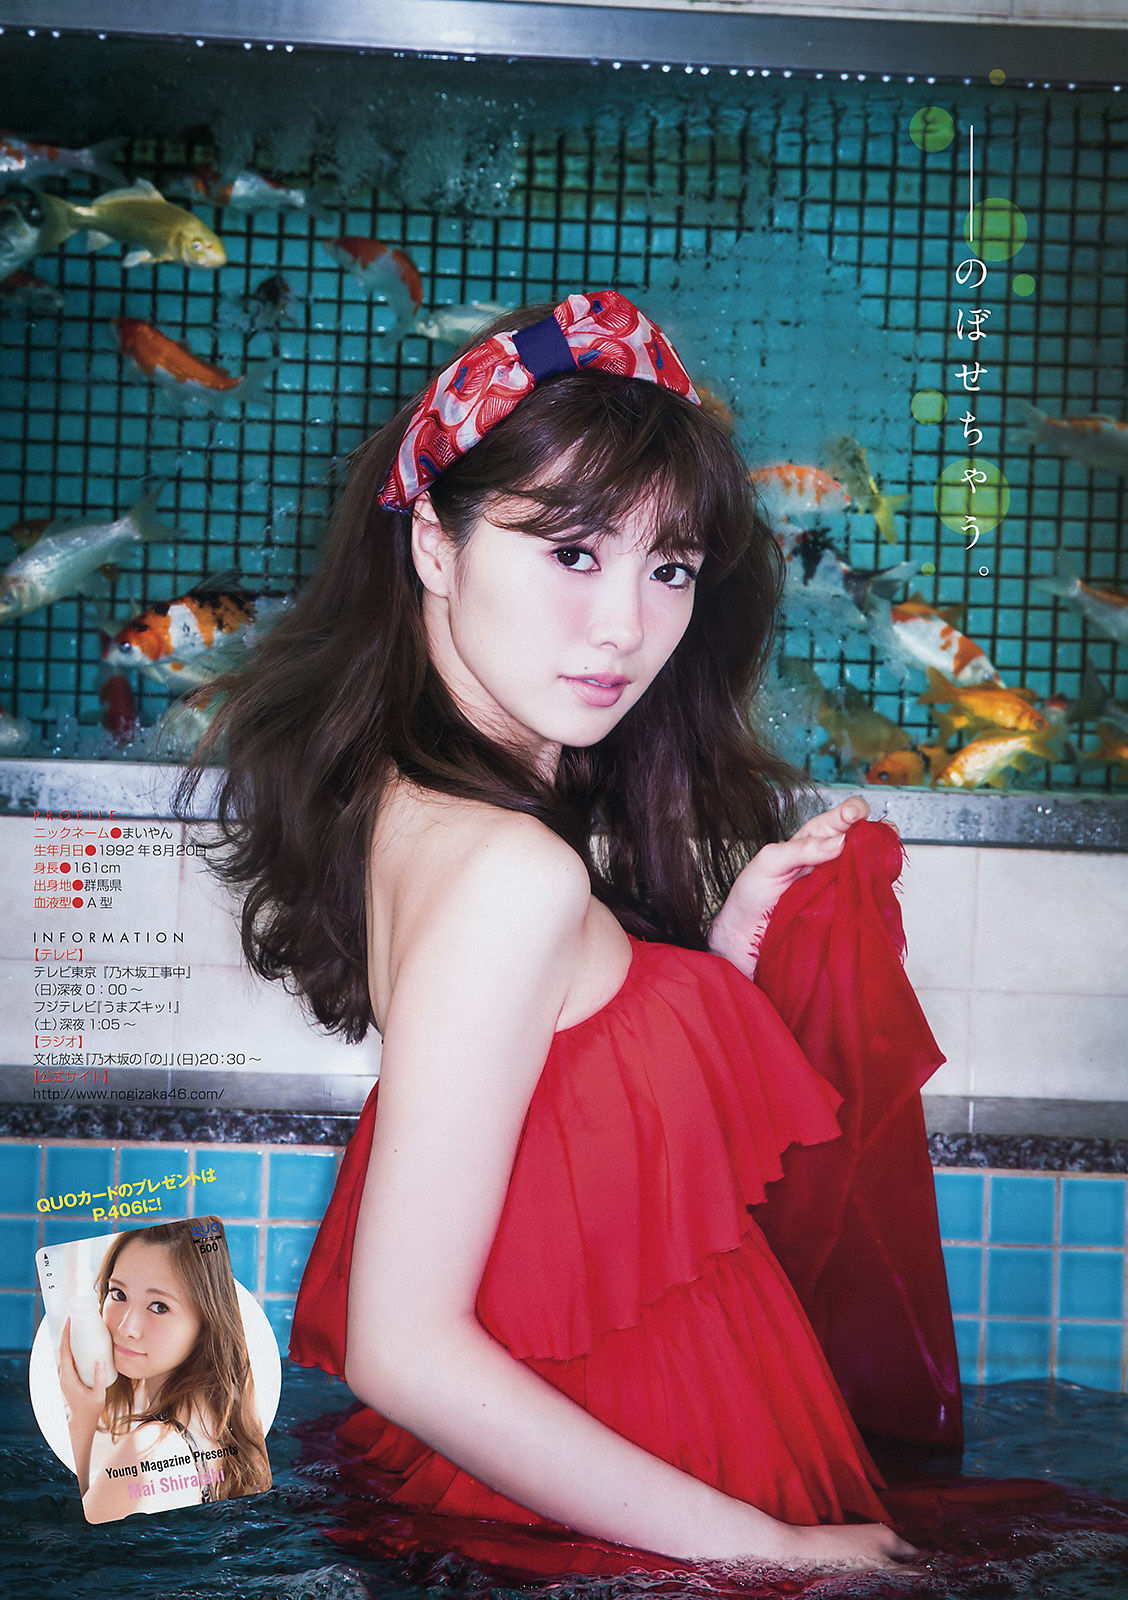 [Young Magazine] Mai Shiraishi i Saree Ikegami 2016 nr 16 Photo Magazine Strona 3 No.c0810b